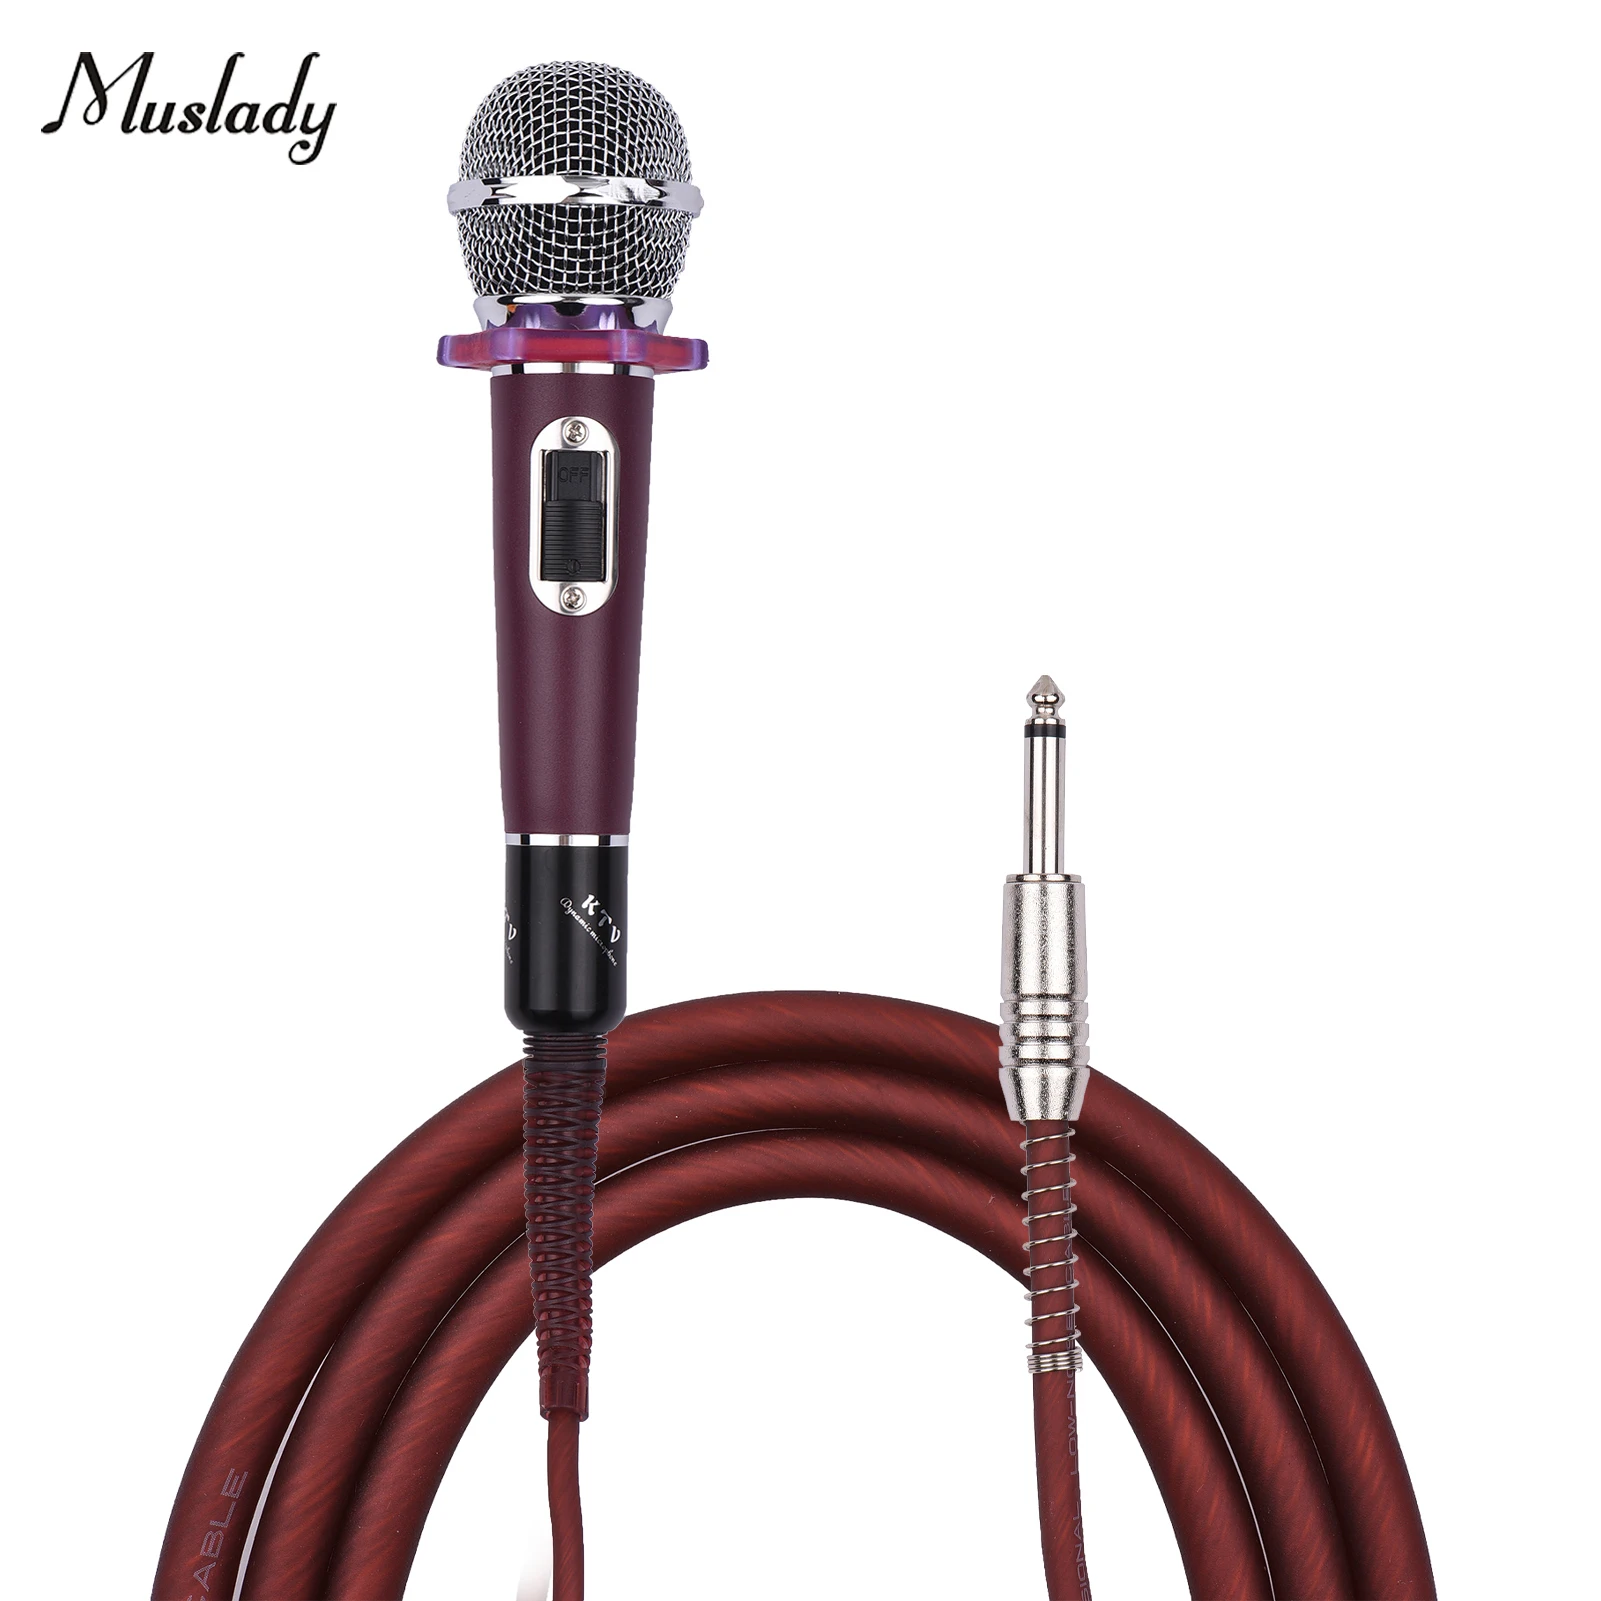 

Кардиоидный конденсаторный микрофон Muslady, проводной микрофон, кабель 4,5 м/15 футов, разъем 6,35 мм для музыки, пения, караоке, сцены